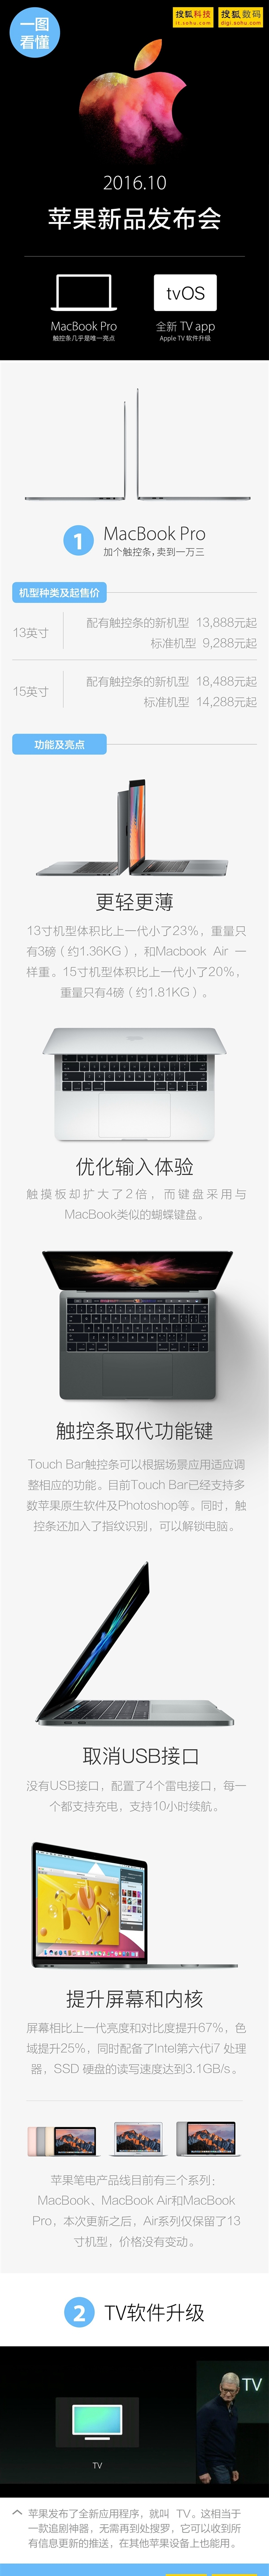 苹果新MacBook Pro笔记本发布 真机图赏